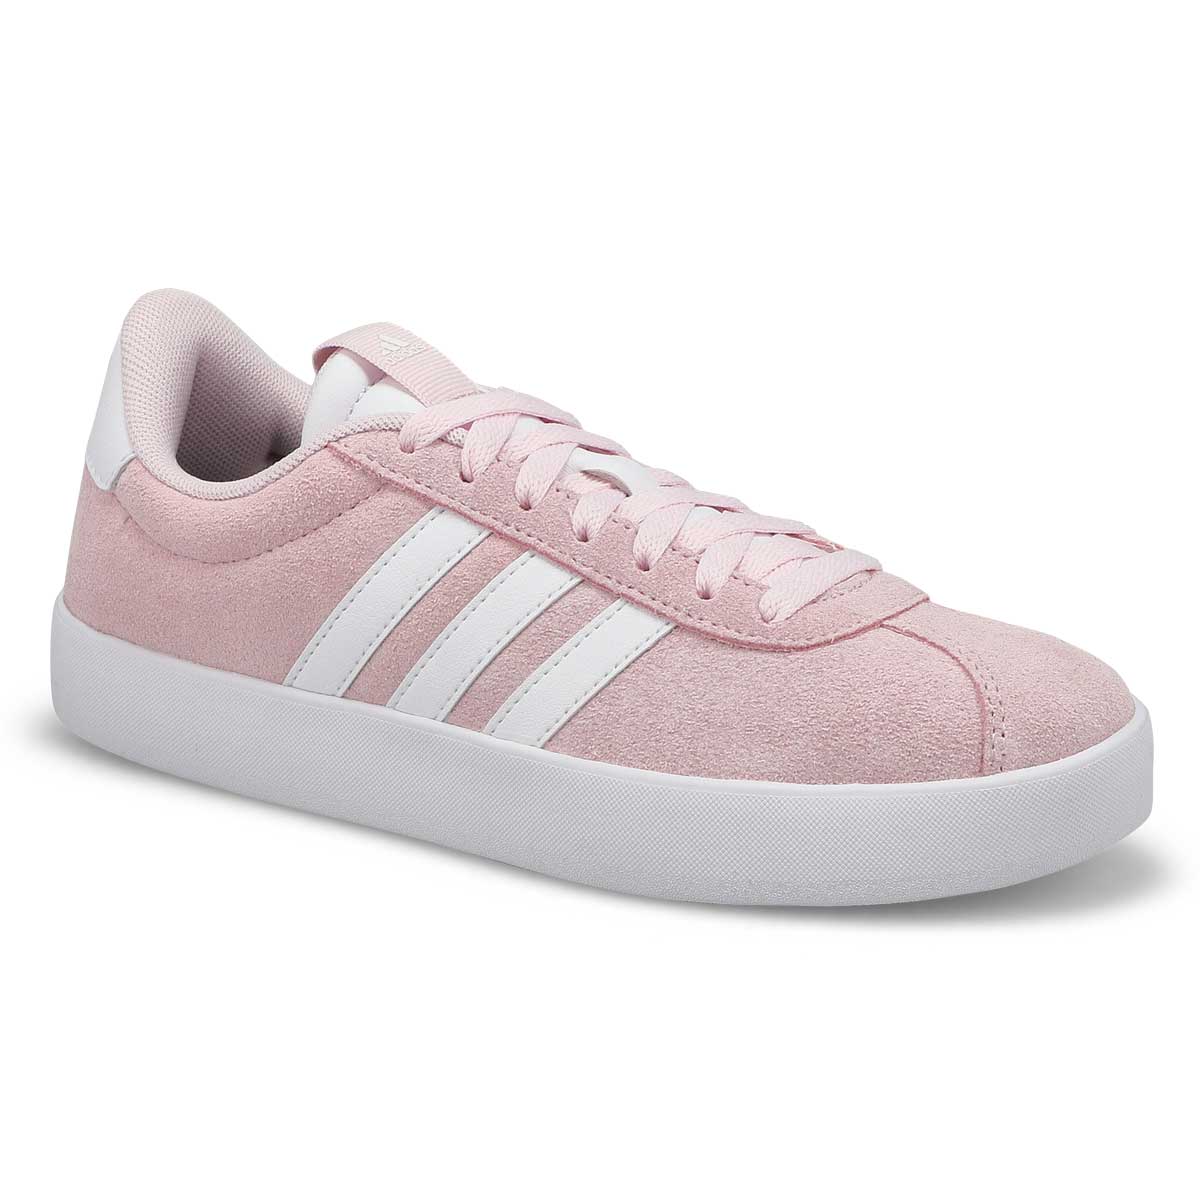 Women's VL Court 3.0 Sneaker - Pink/White